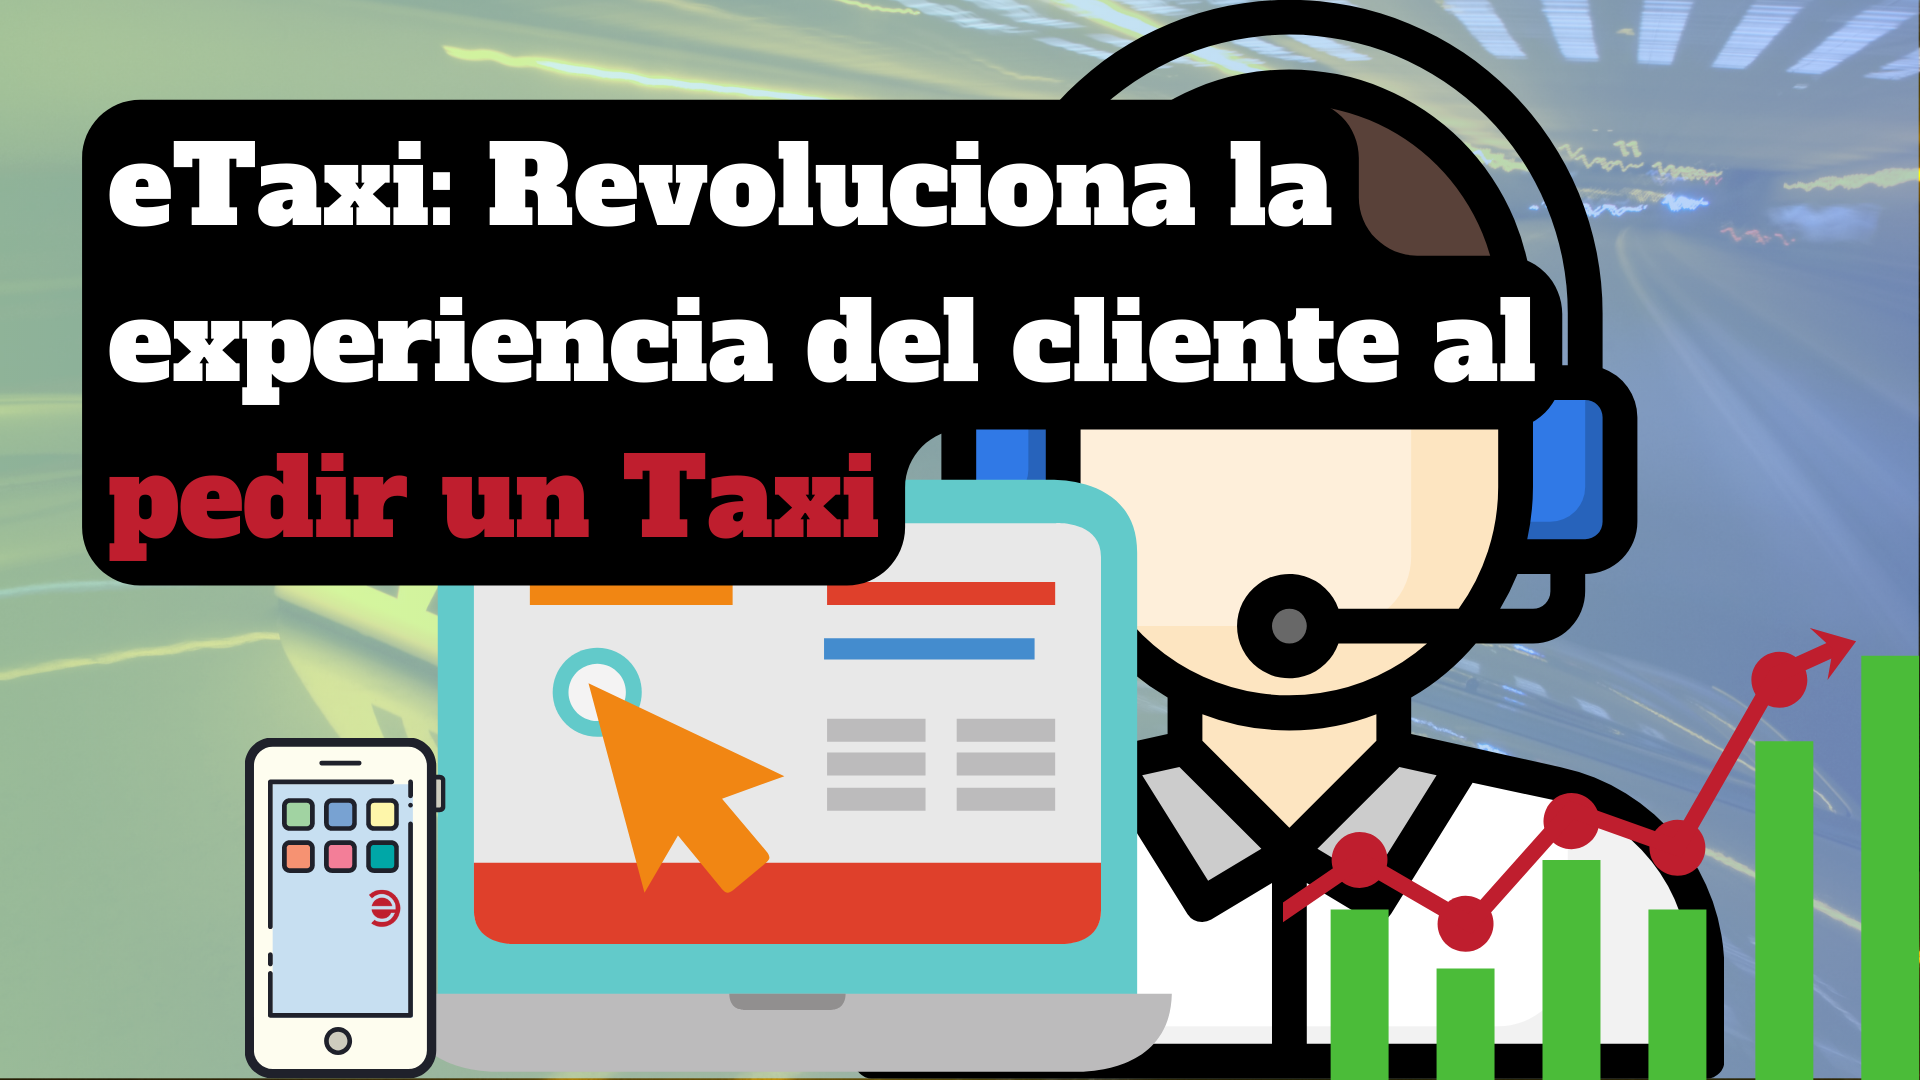 eTaxi: La solución integral que revoluciona la experiencia del cliente al pedir un Taxi